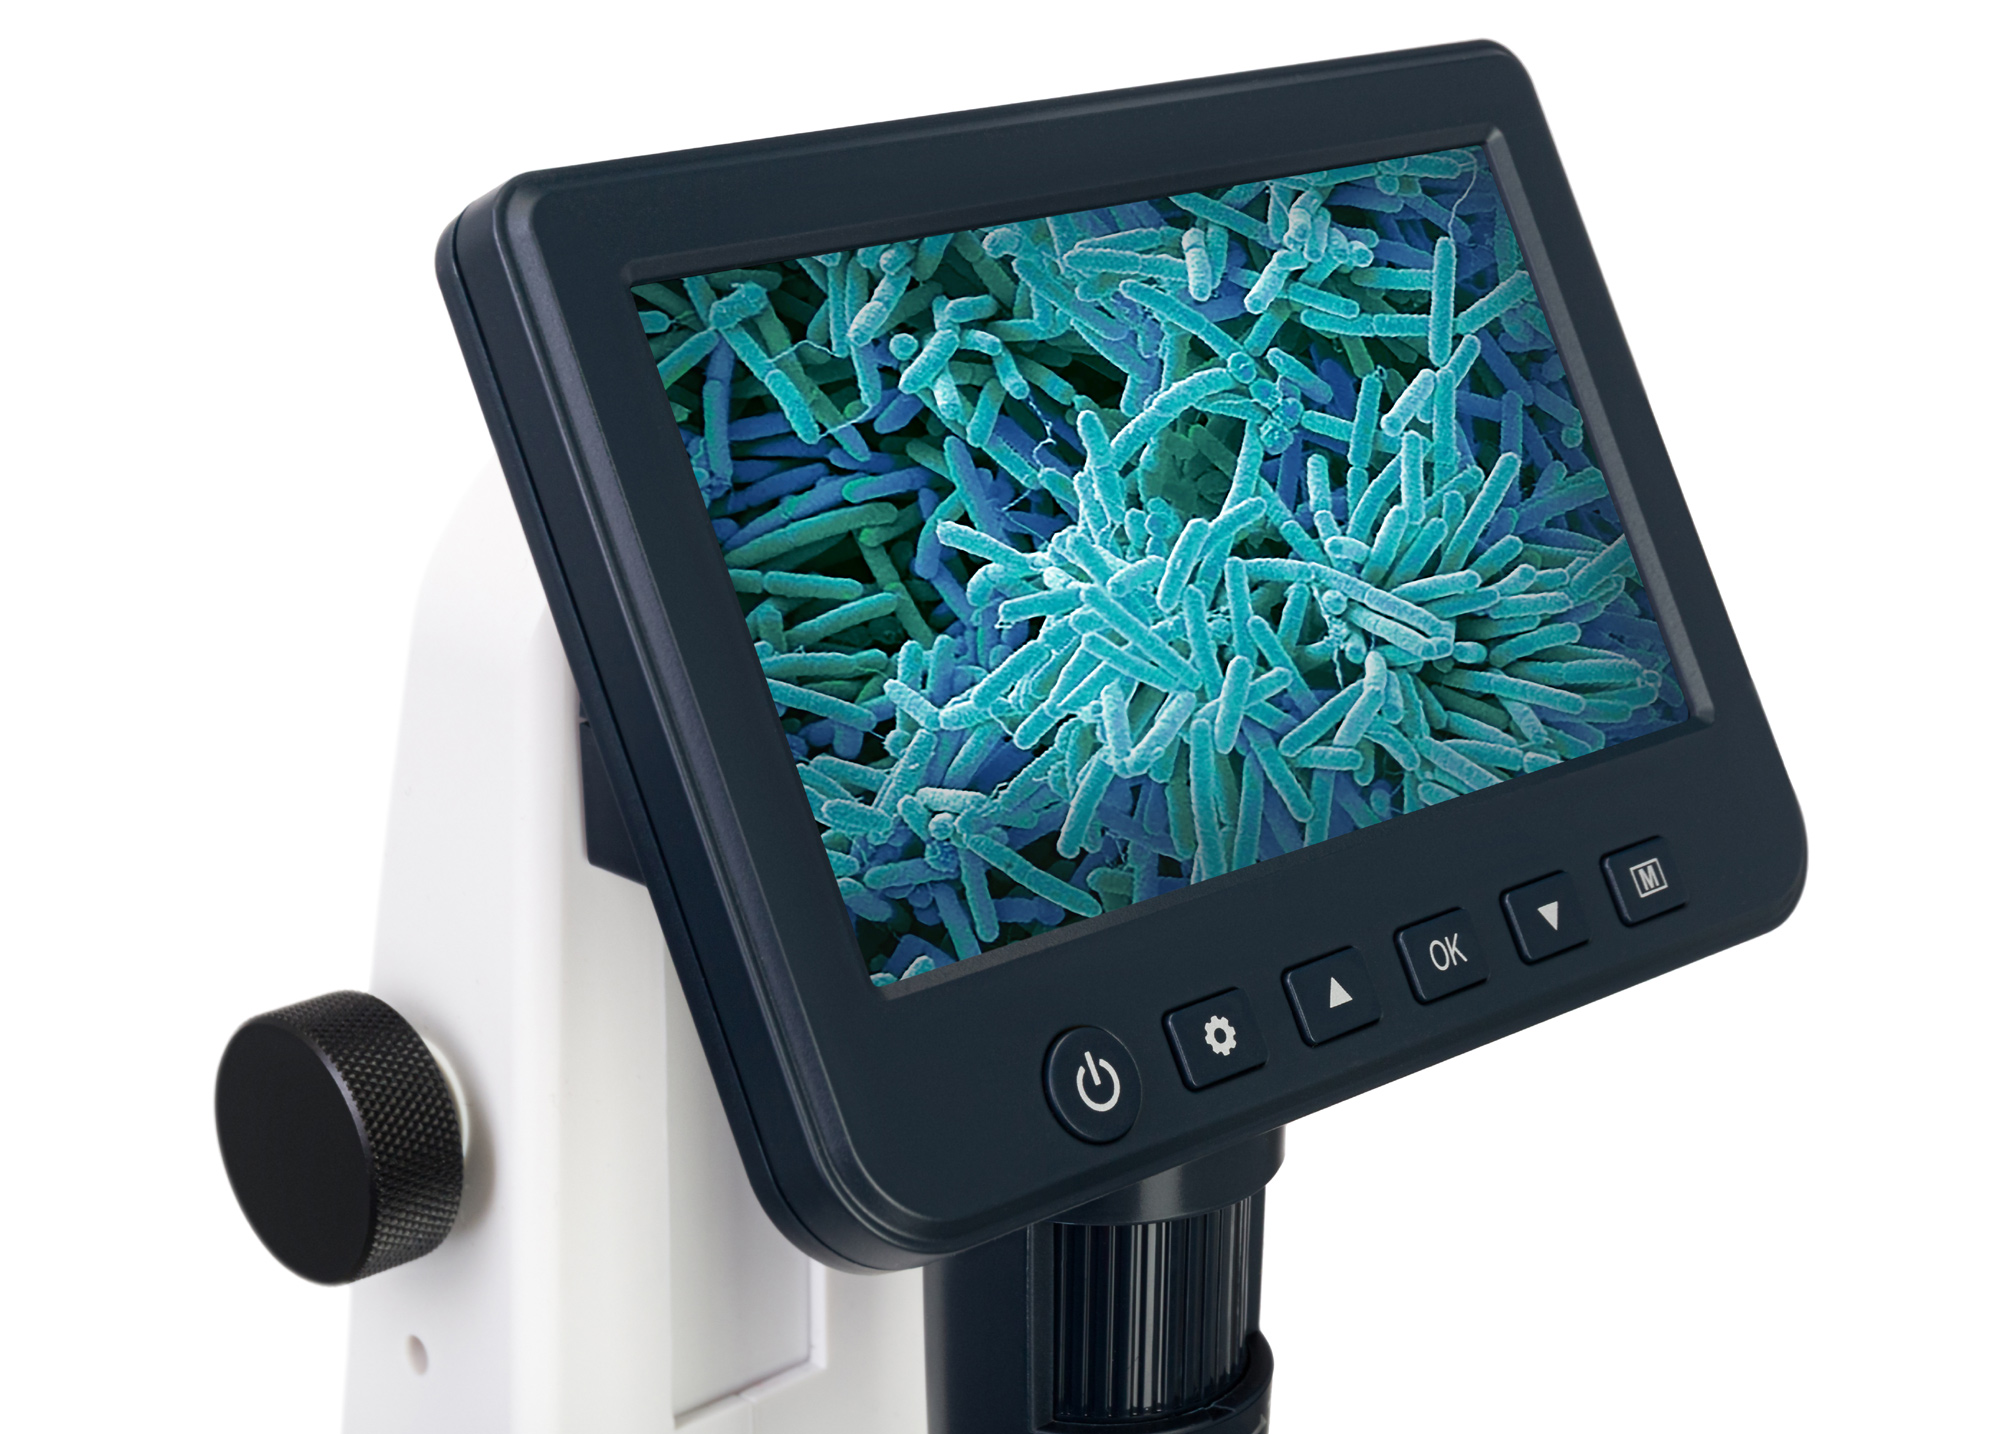 Výslendý obraz i pořízené snímky a videa z mikroskopu Discovery Artisan 512 se přenáší na 5? LCD obrazovku pro snadný monitoring v reálném čase.